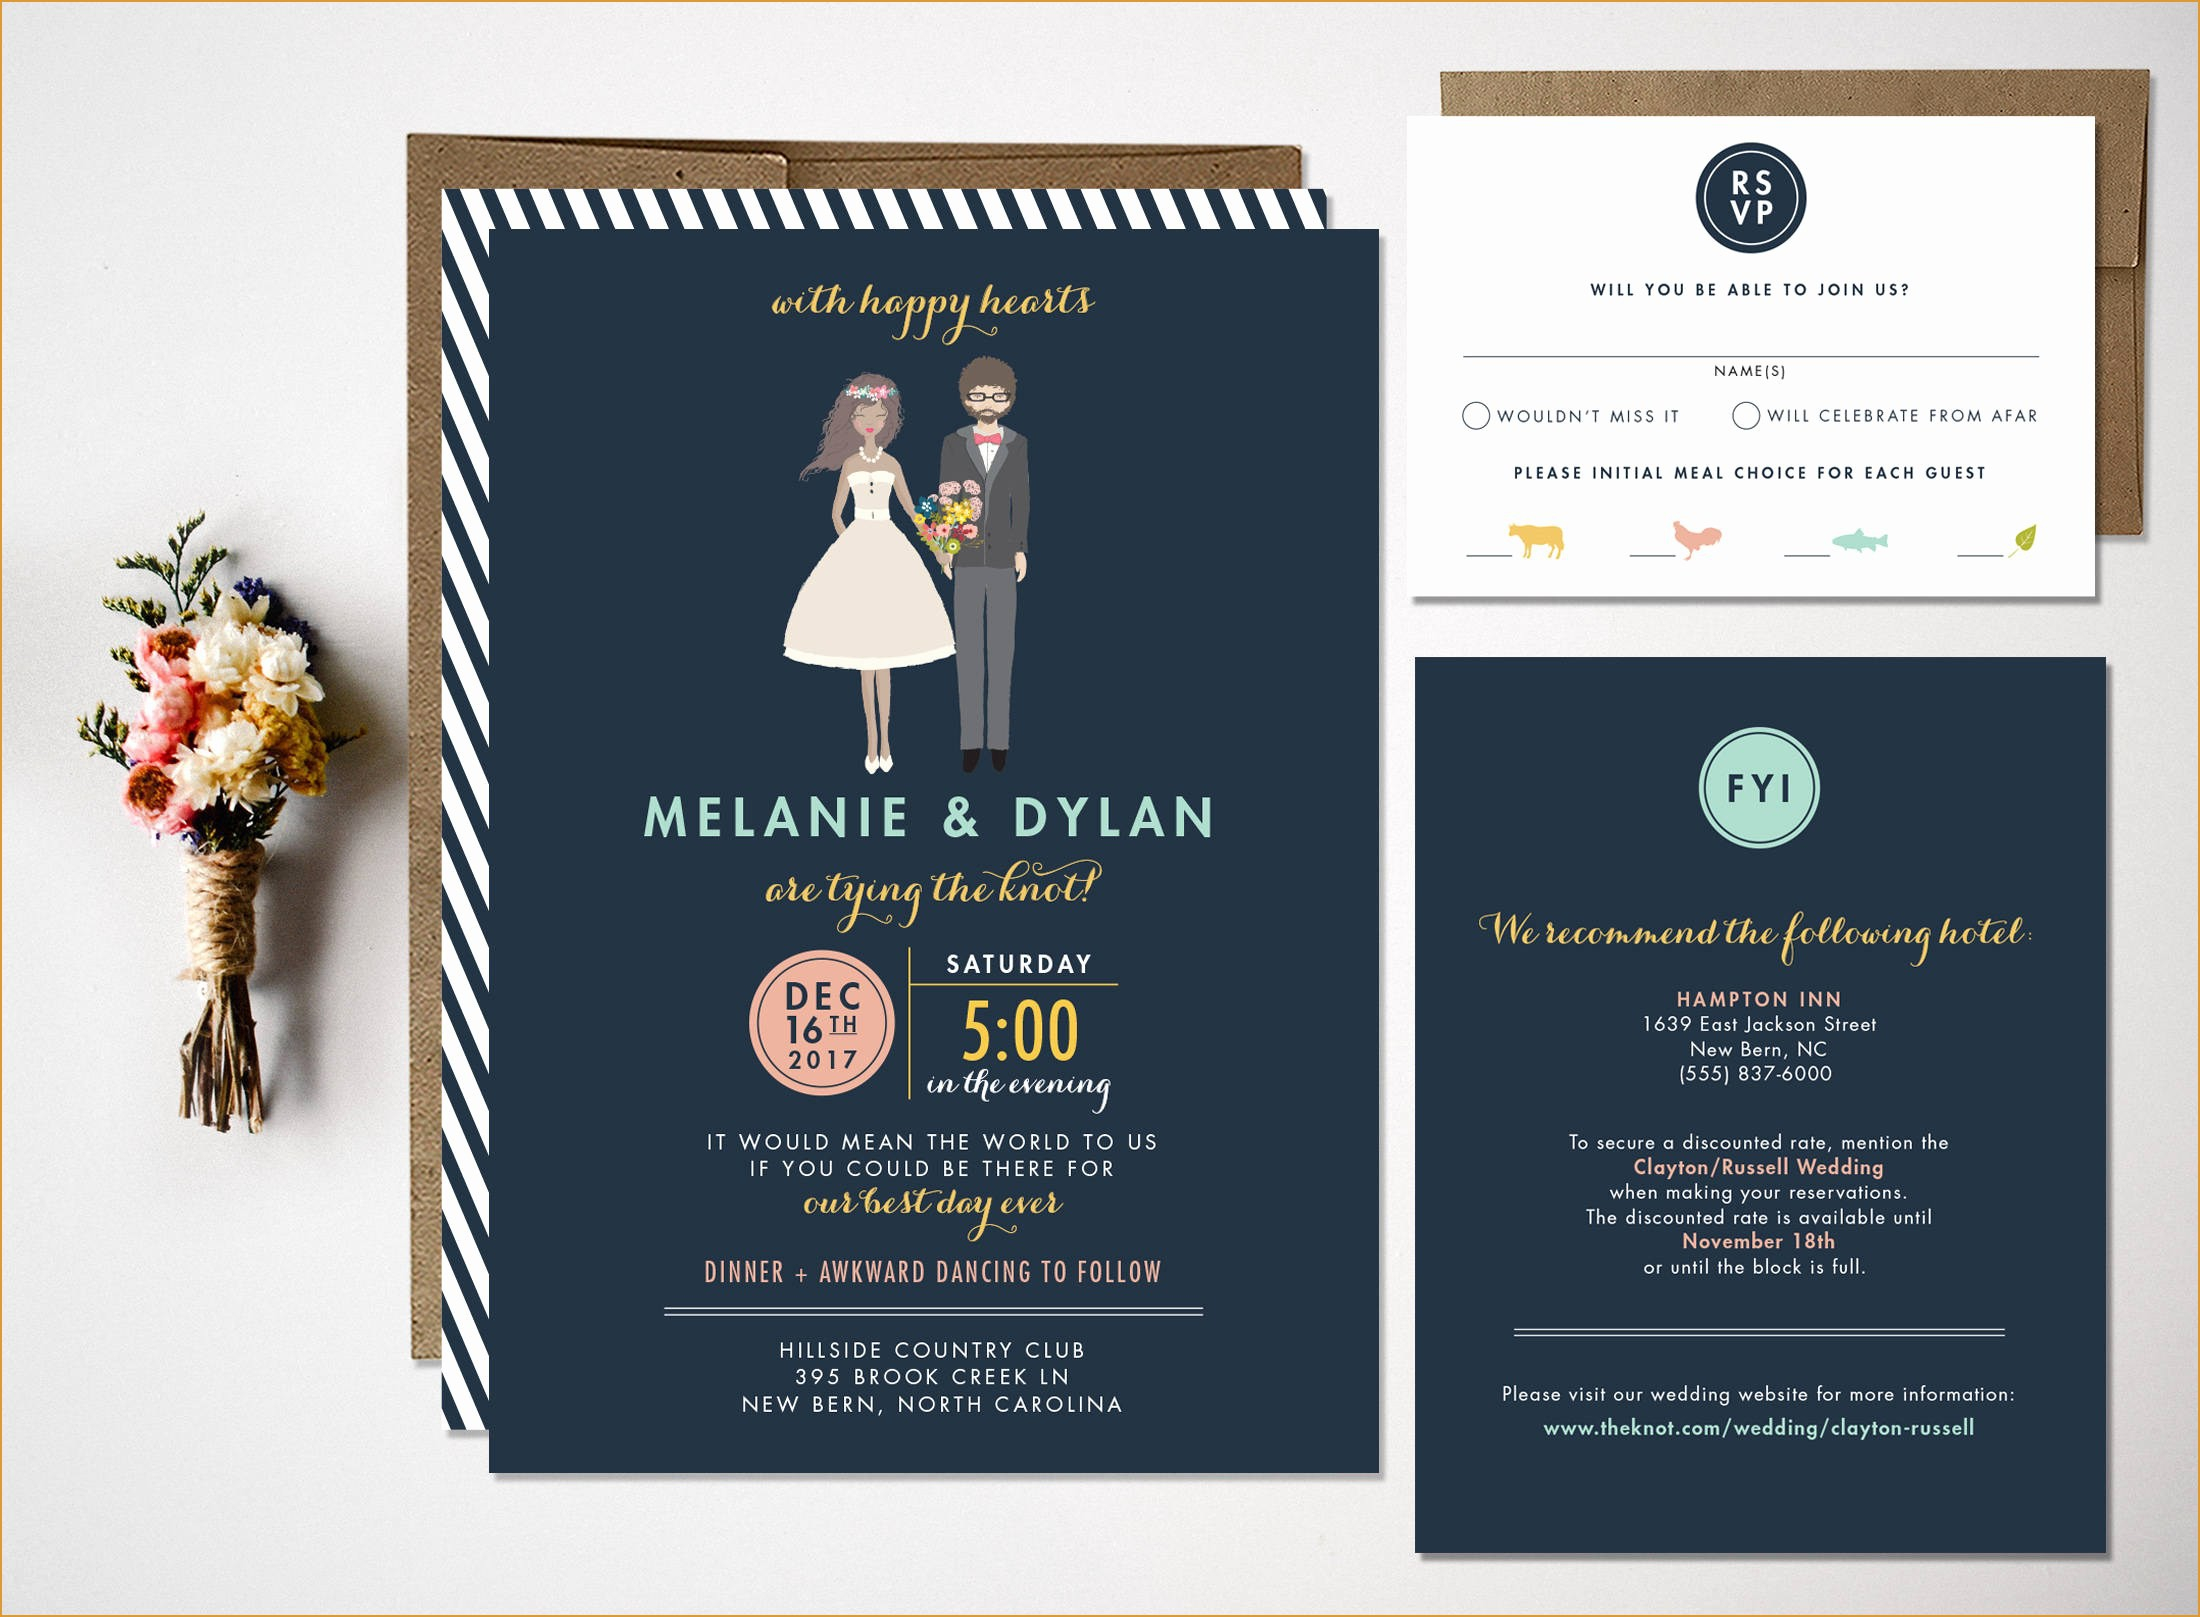 Best Wedding Invitation Websites Awesome Romeo And Juliet Wedding Invitation Top Wedding Ideas